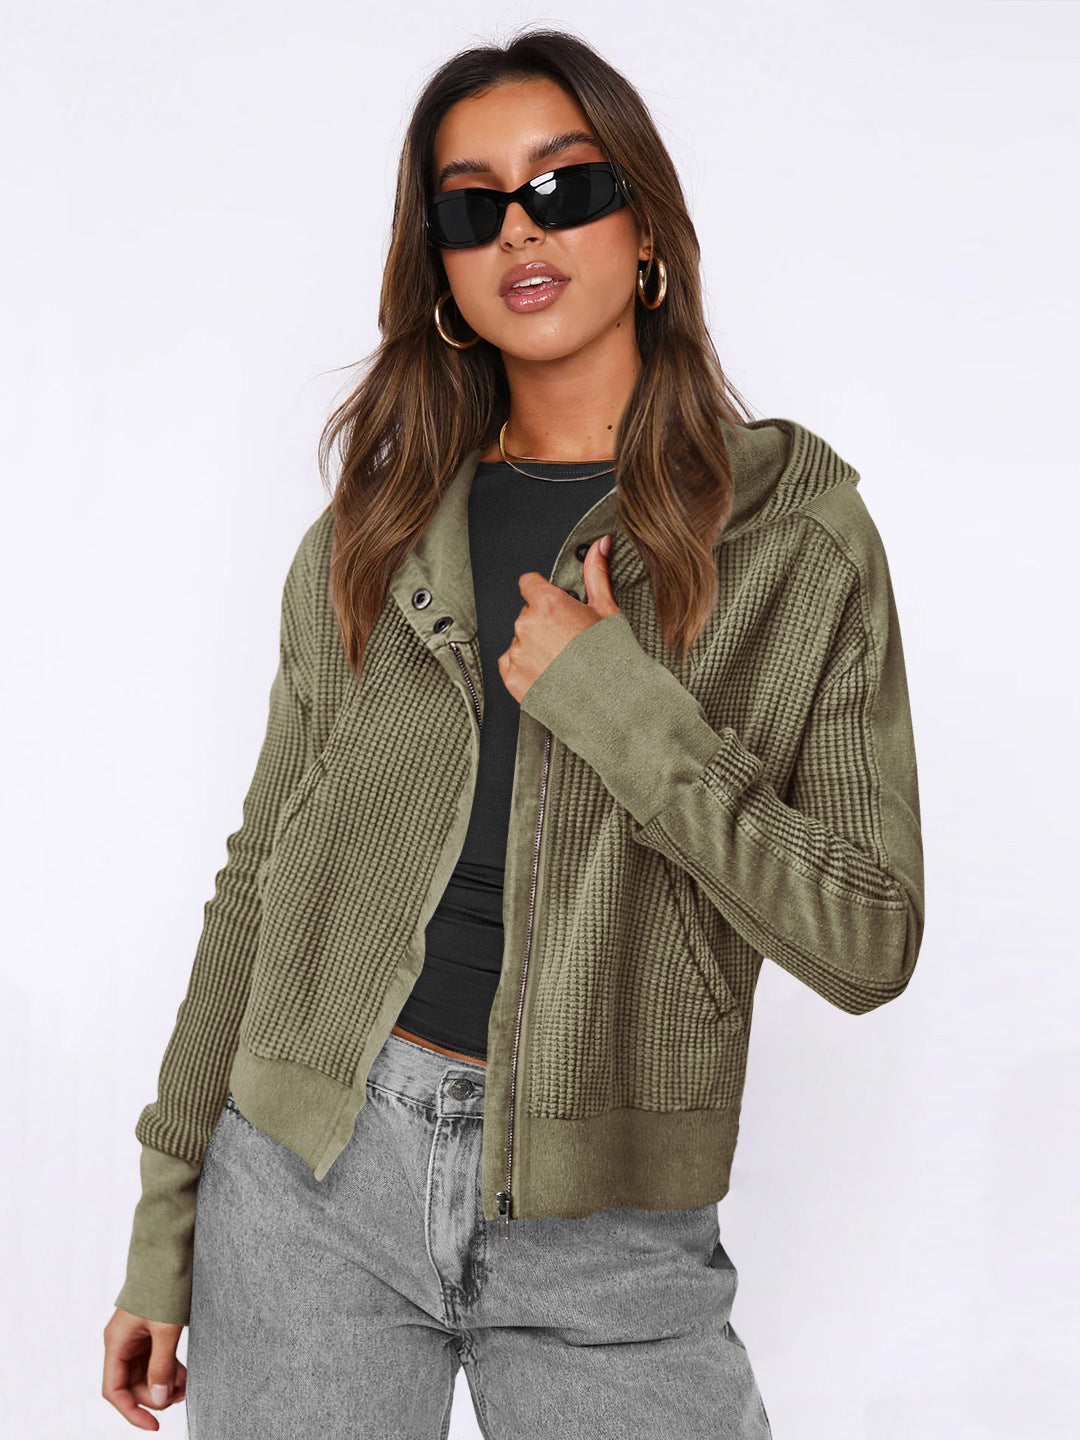 Fashion Hooded Sweatshirt Jacket Women Zipper Short Sweater Tops